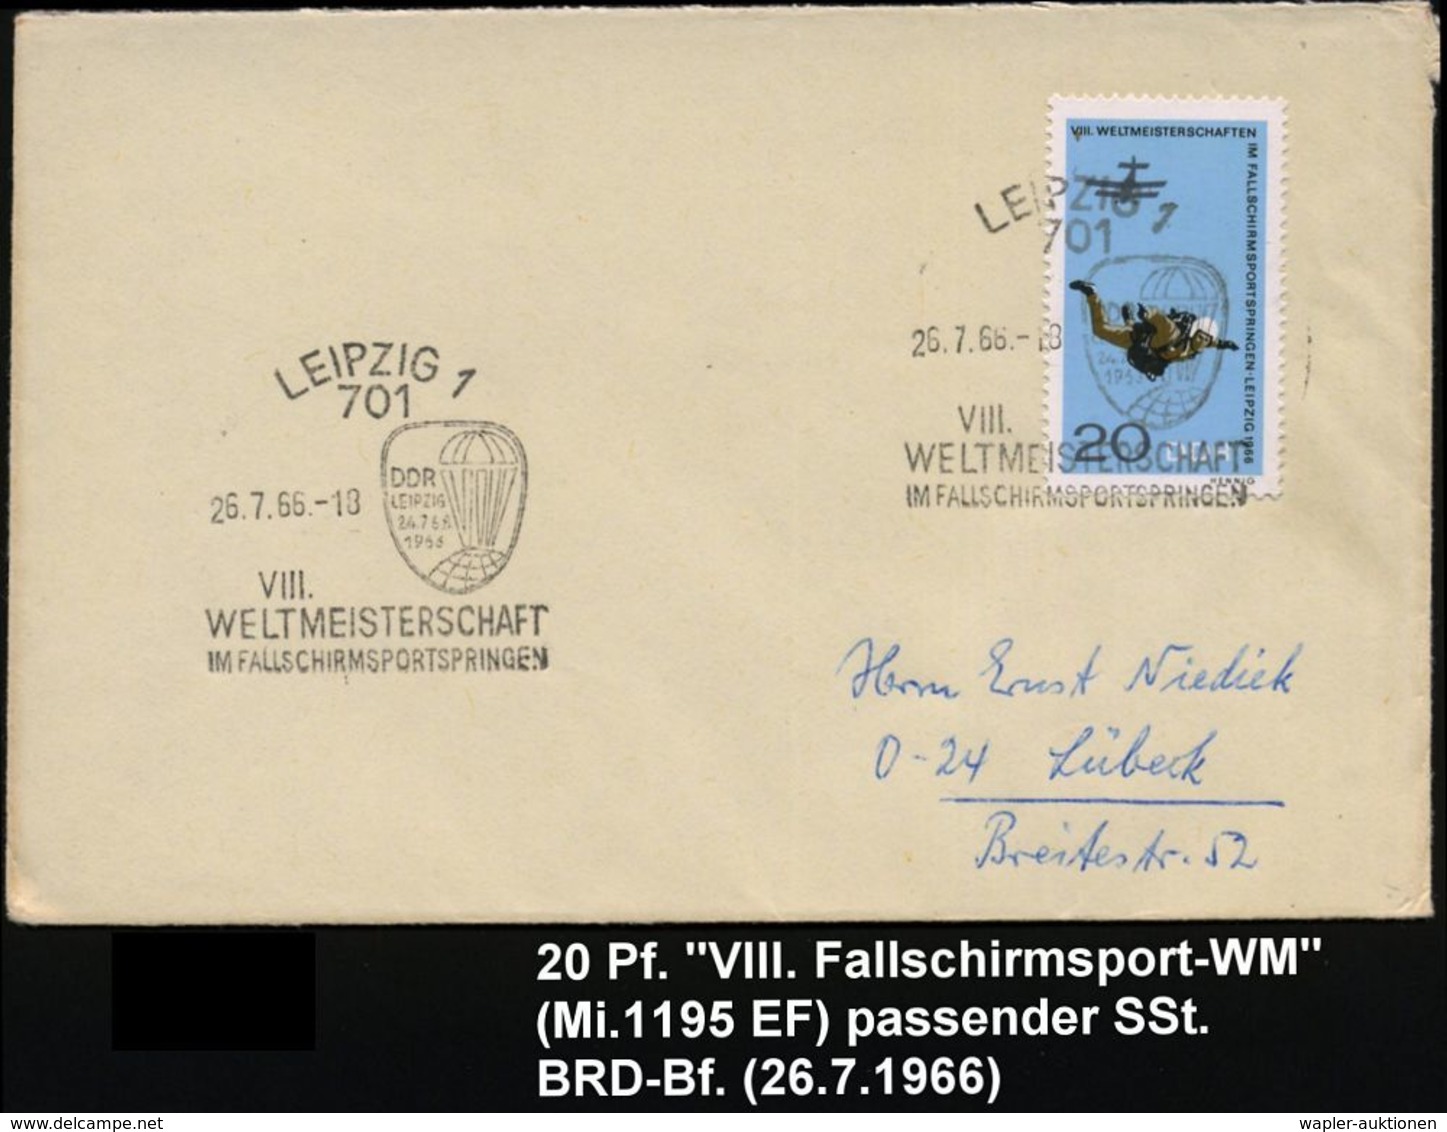 FALLSCHIRM-THEMATIK / FALLSCHIRMSPORT : 701 LEIPZIG 1/ VIII./ WELTMEISTERSCHAFT/ IM FALLSCHIRMSPORTSPRINGEN 1966 (26.7.) - Parachutisme